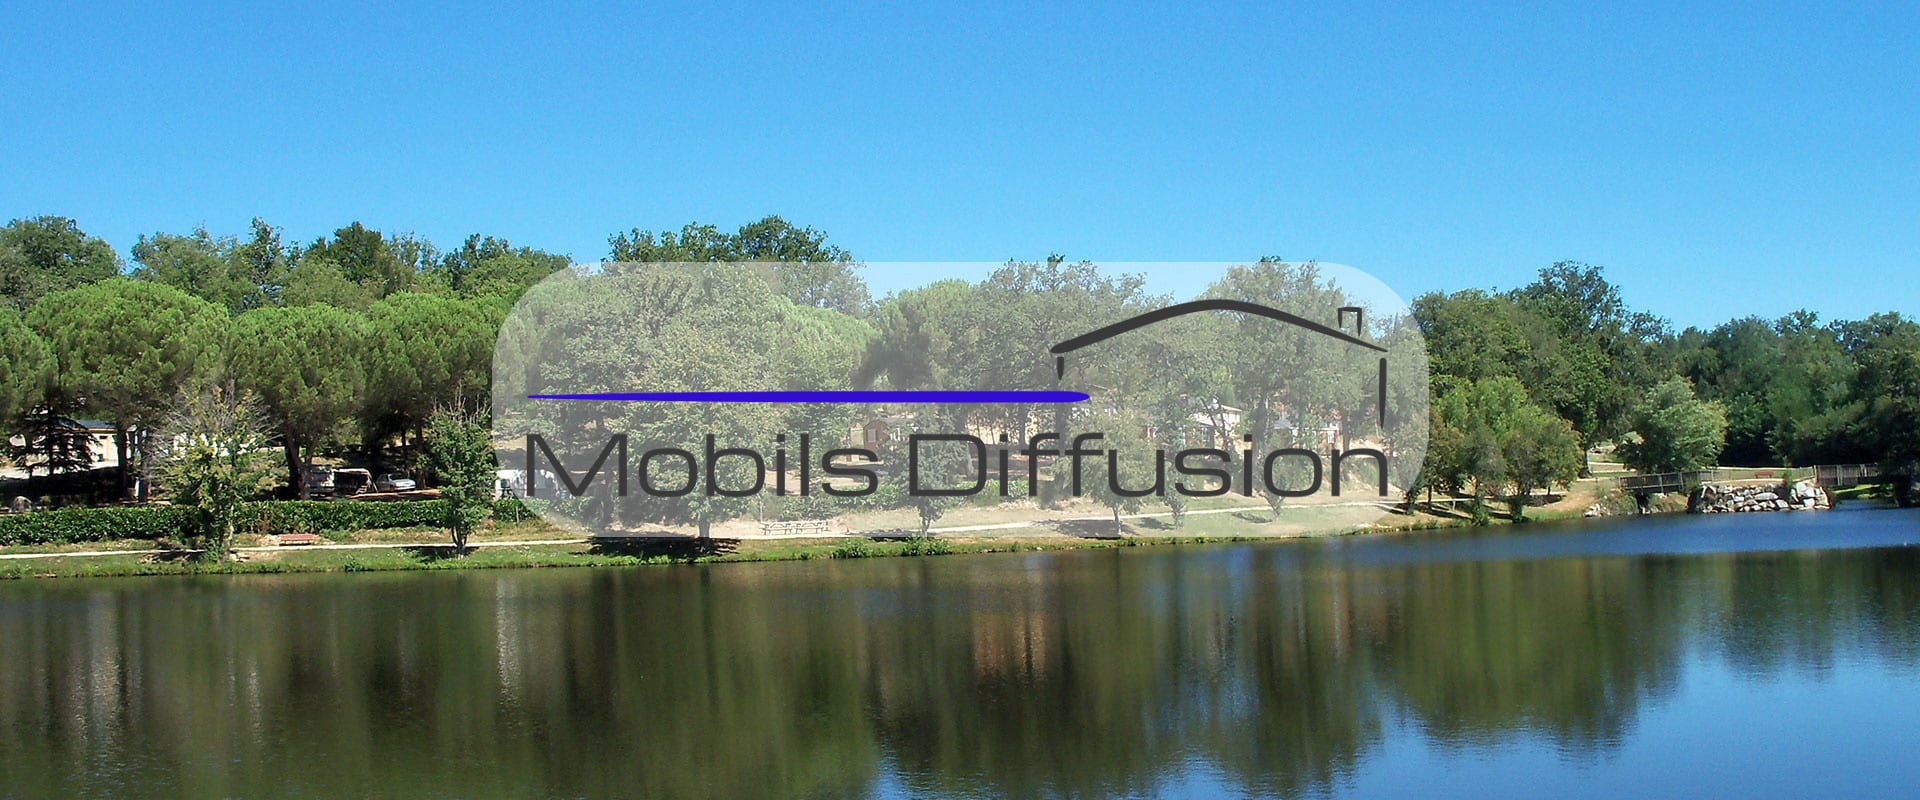 Mobils Diffusion - Parcelle pour mobil-home dans camping proche d’un lac de l’Aveyron 12